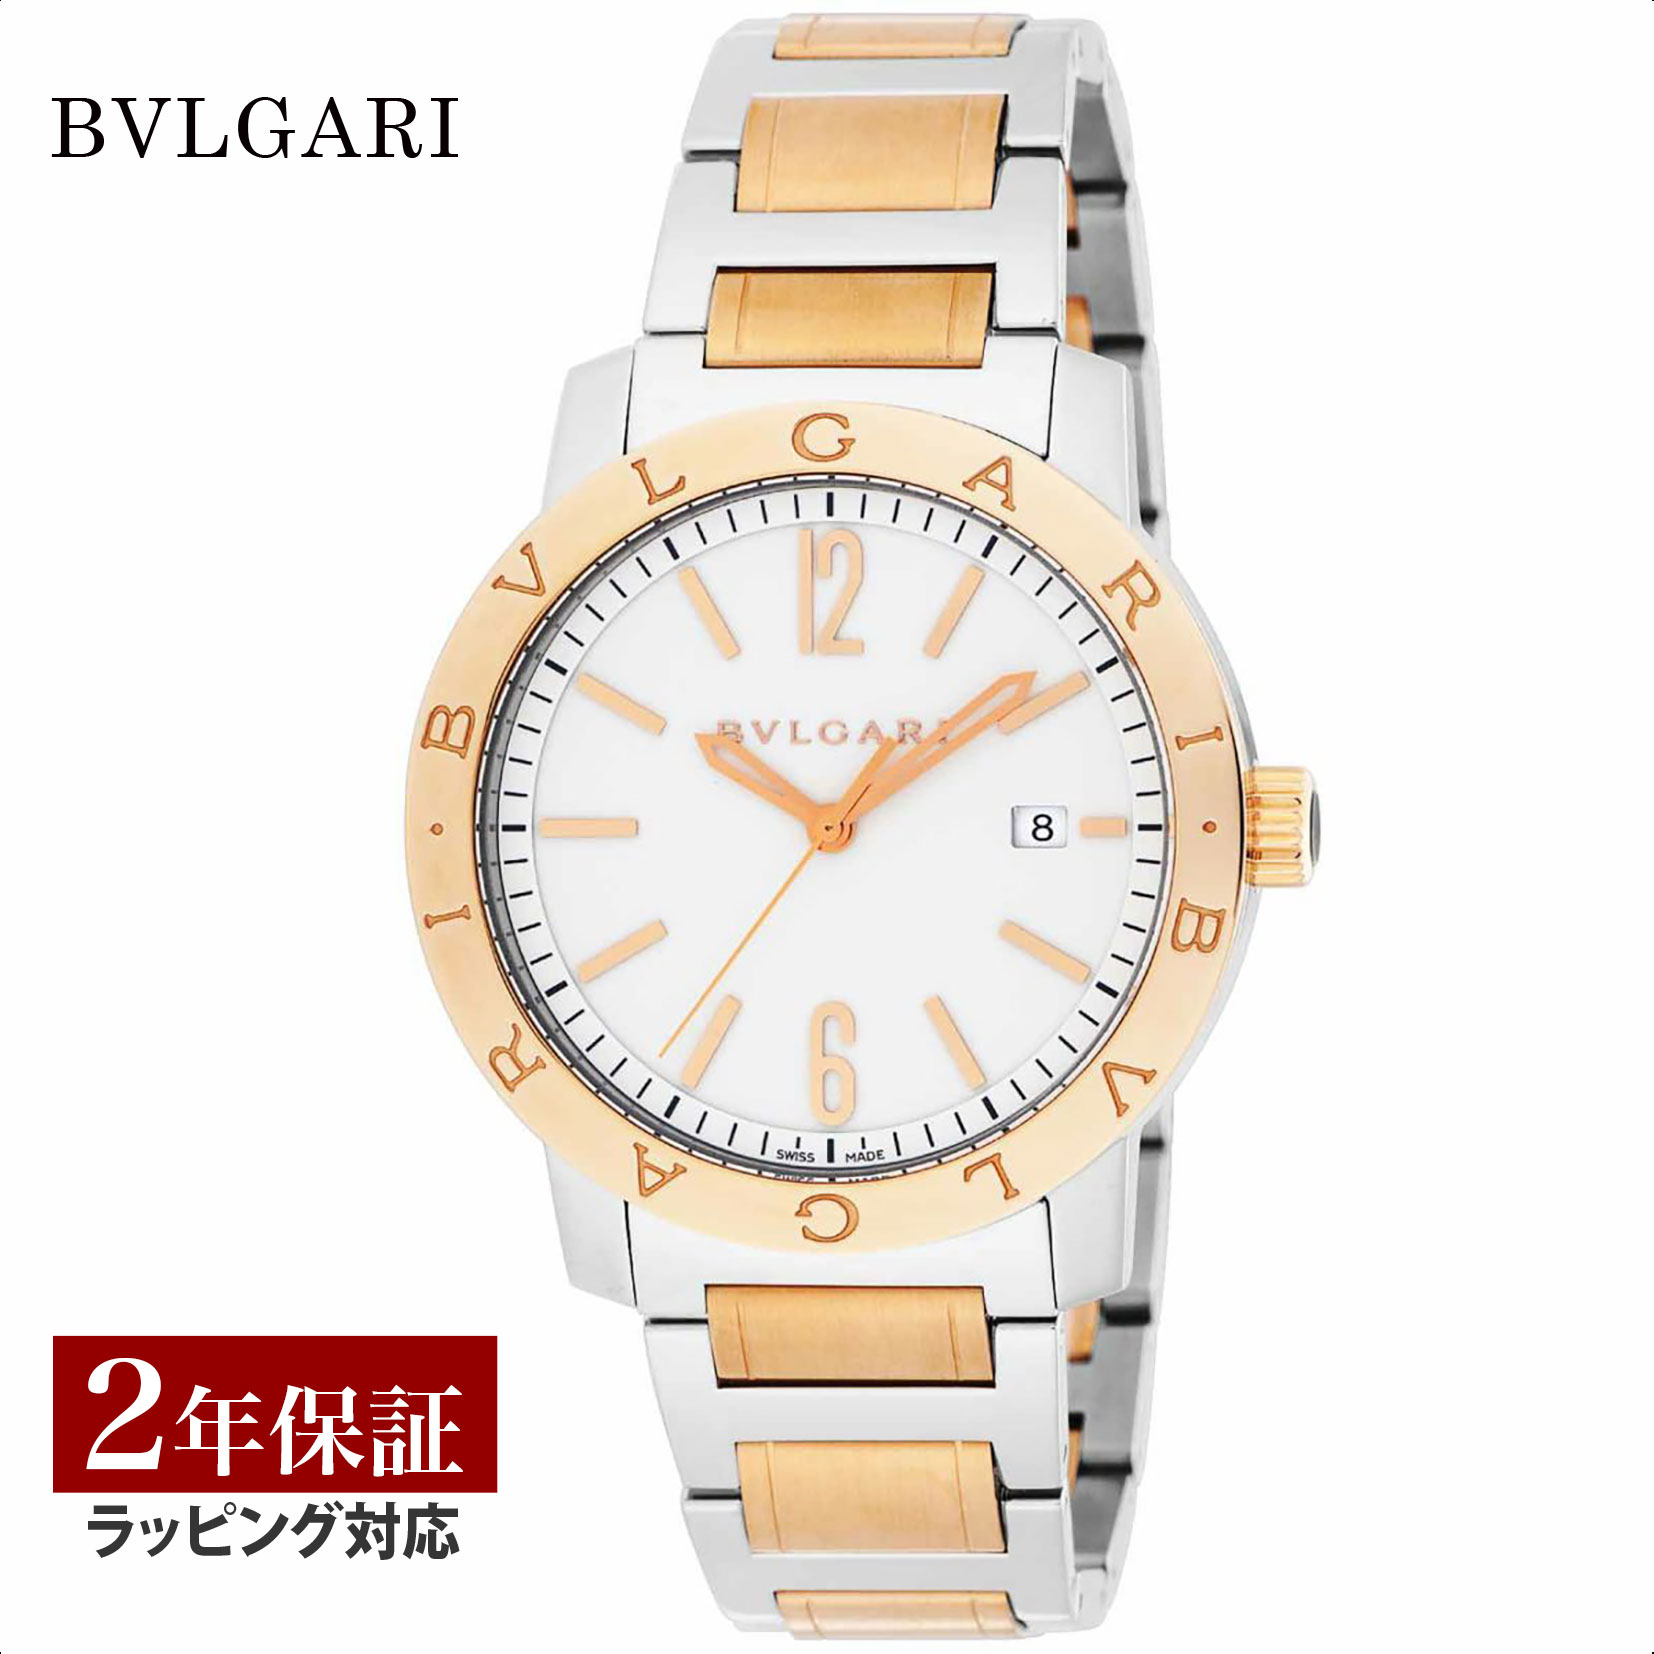 ブルガリブルガリ 腕時計（メンズ） 【レビューでブルガリディナー券】ブルガリ BVLGARI メンズ 時計 Bvlgari Bvlgari ブルガリブルガリ 自動巻 ホワイト BB41WSPGD 時計 腕時計 高級腕時計 ブランド 【ローン金利無料】